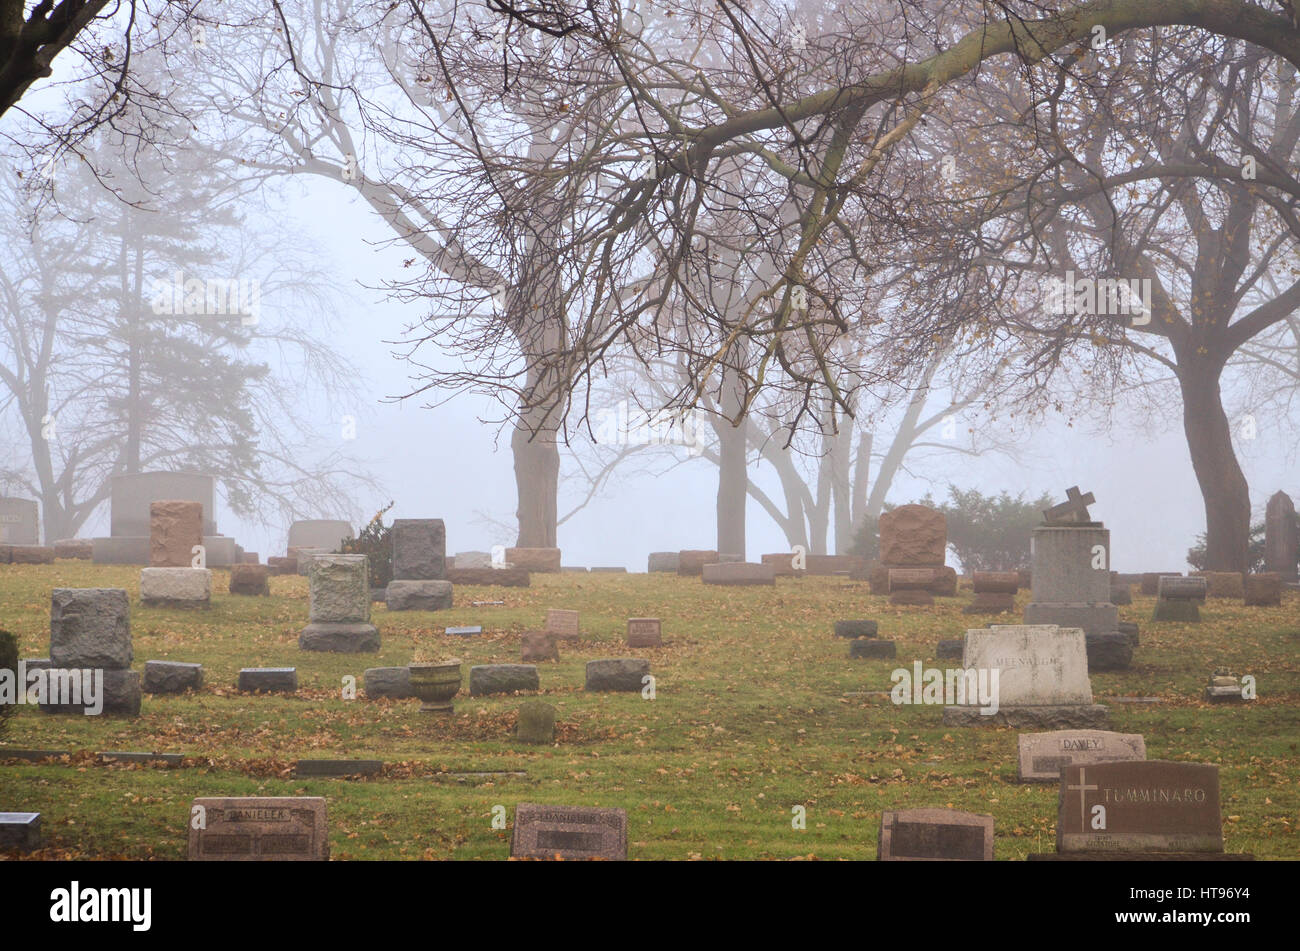 cemetery Stock Photo